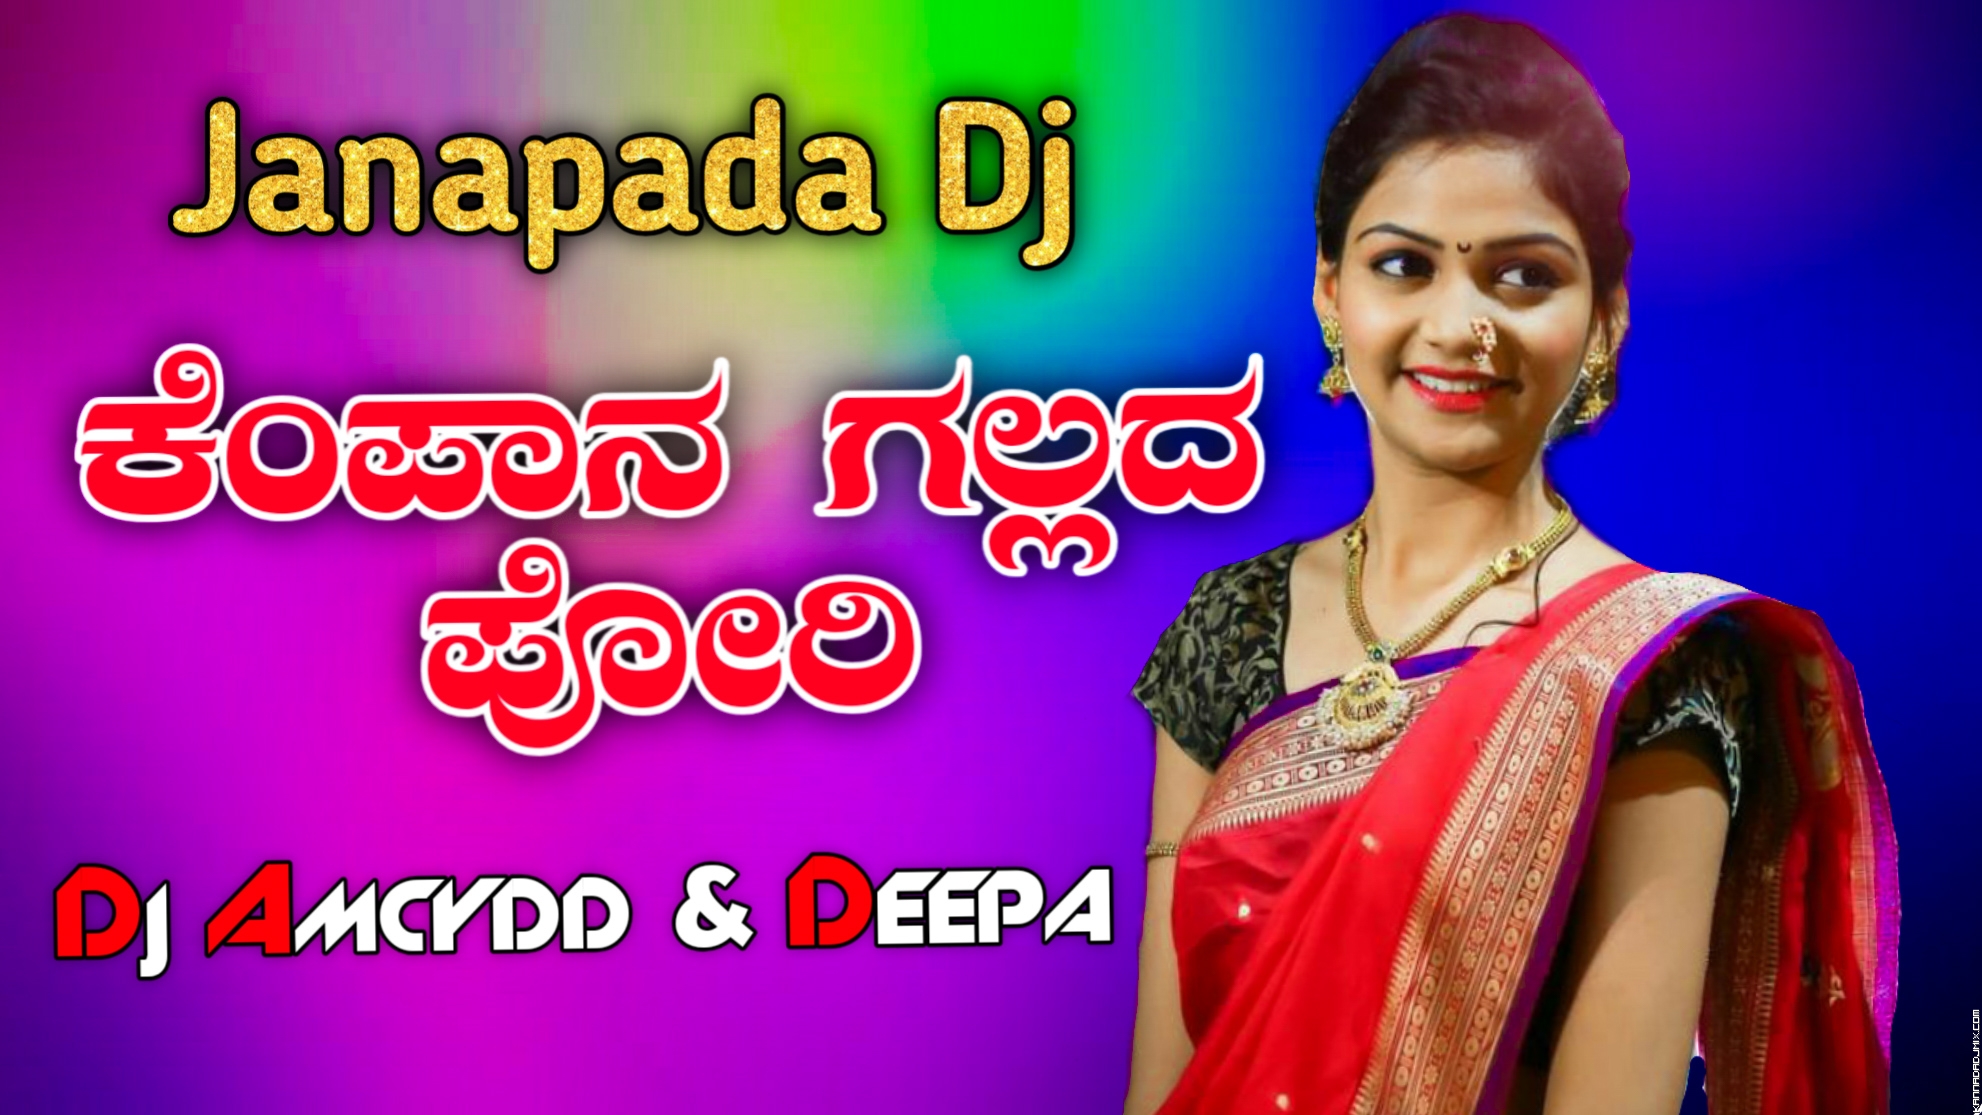 ಕೆಂಪಾನ ಗಲ್ಲದ ಪೋರಿ EDM Topori MiX DJ Amcydd & Deepa.mp3